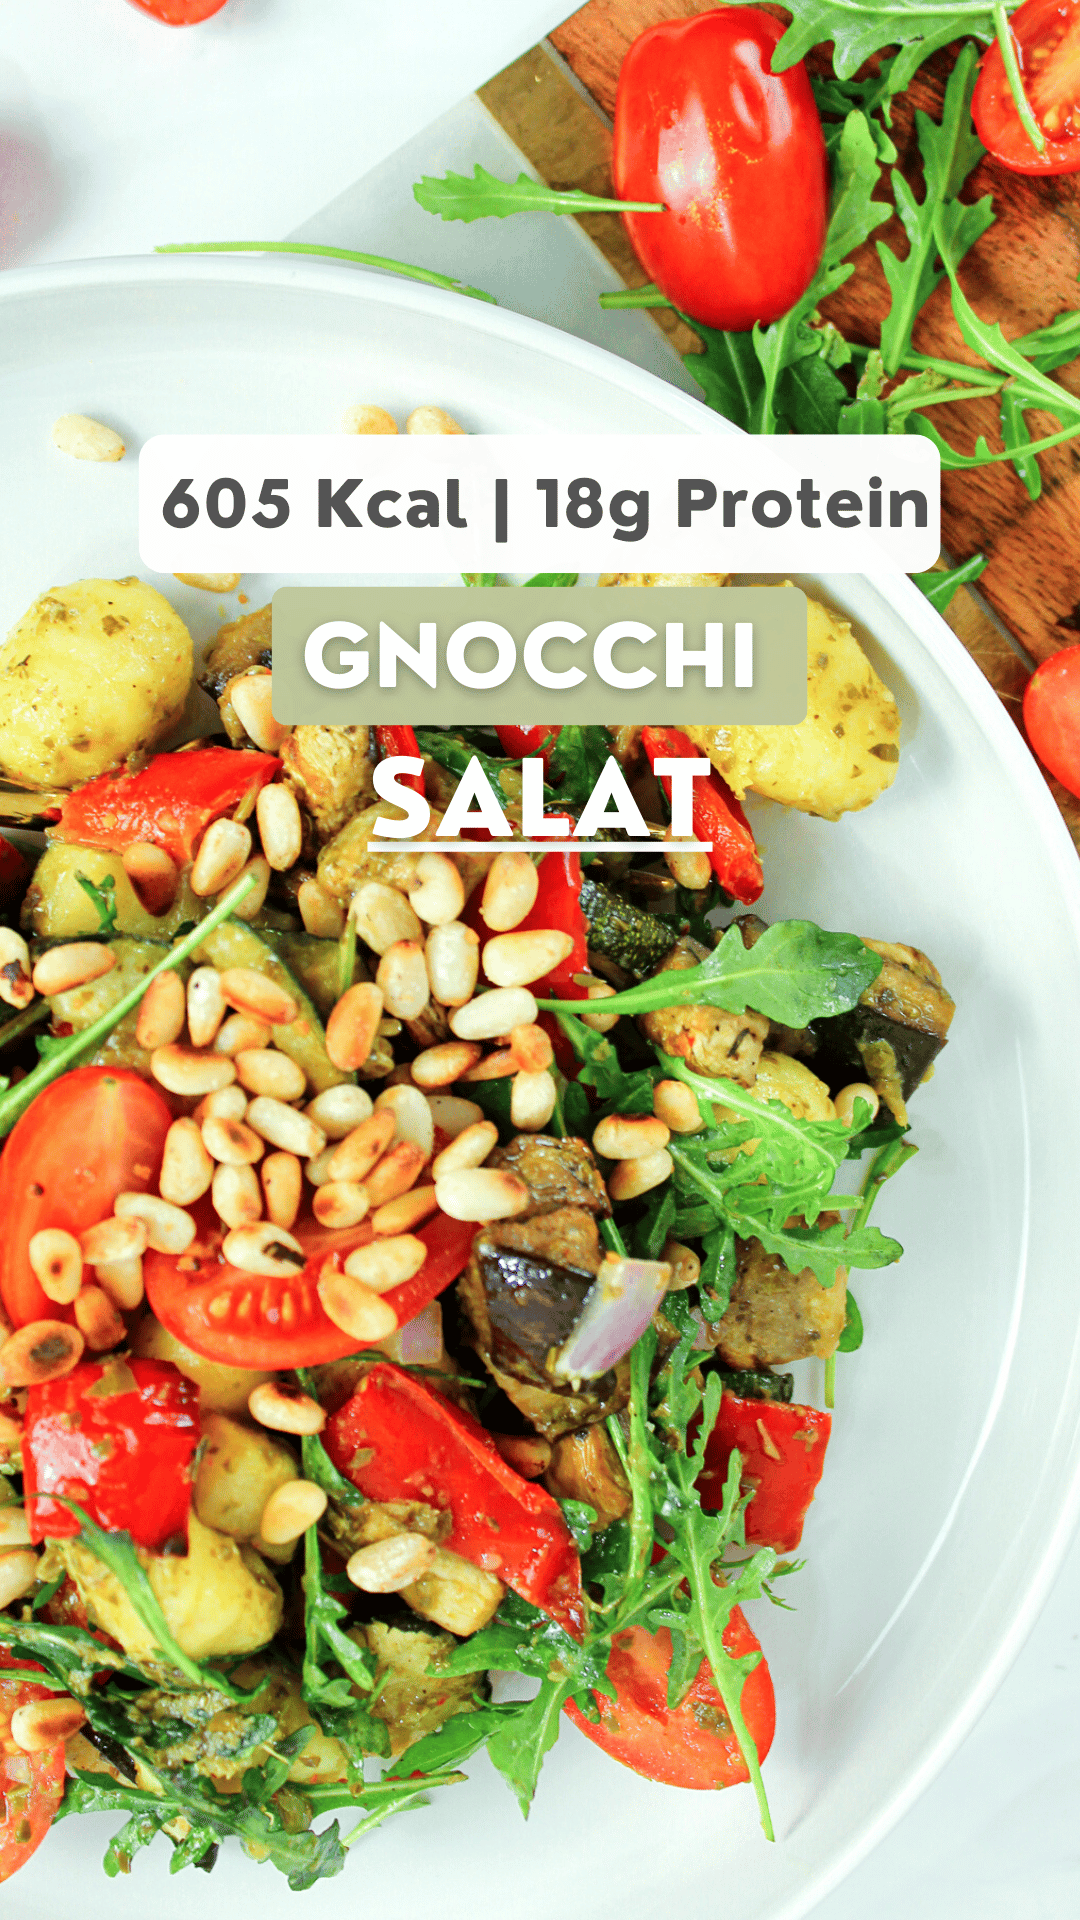 Kalter Gnocchi Salat mit Grillgemüse perfekt zum Grillen | vegan